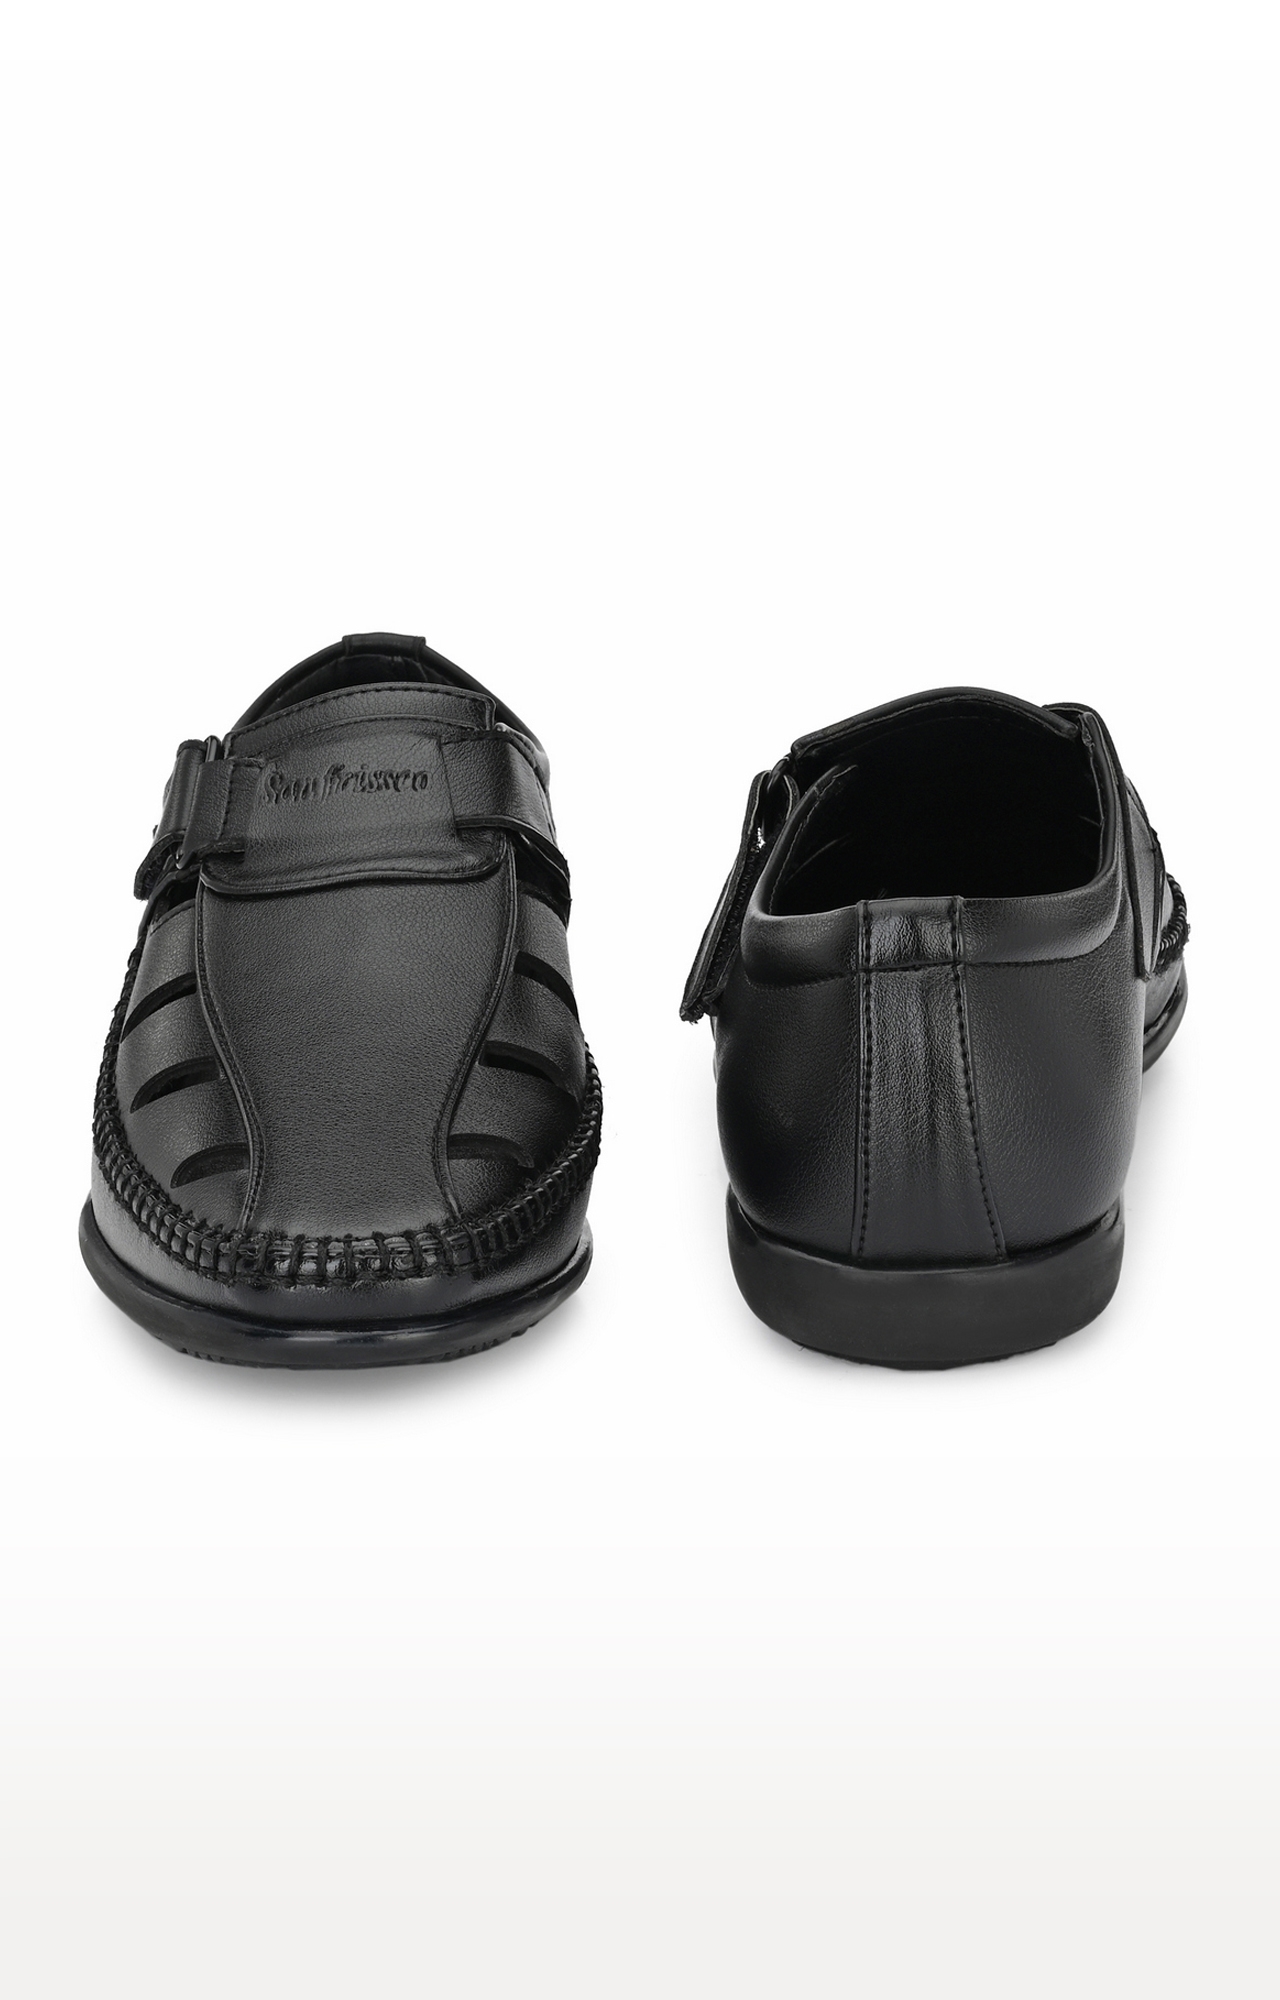 San Frissco | San Frissco Men's Faux Leather Pashto Black Sandals 2